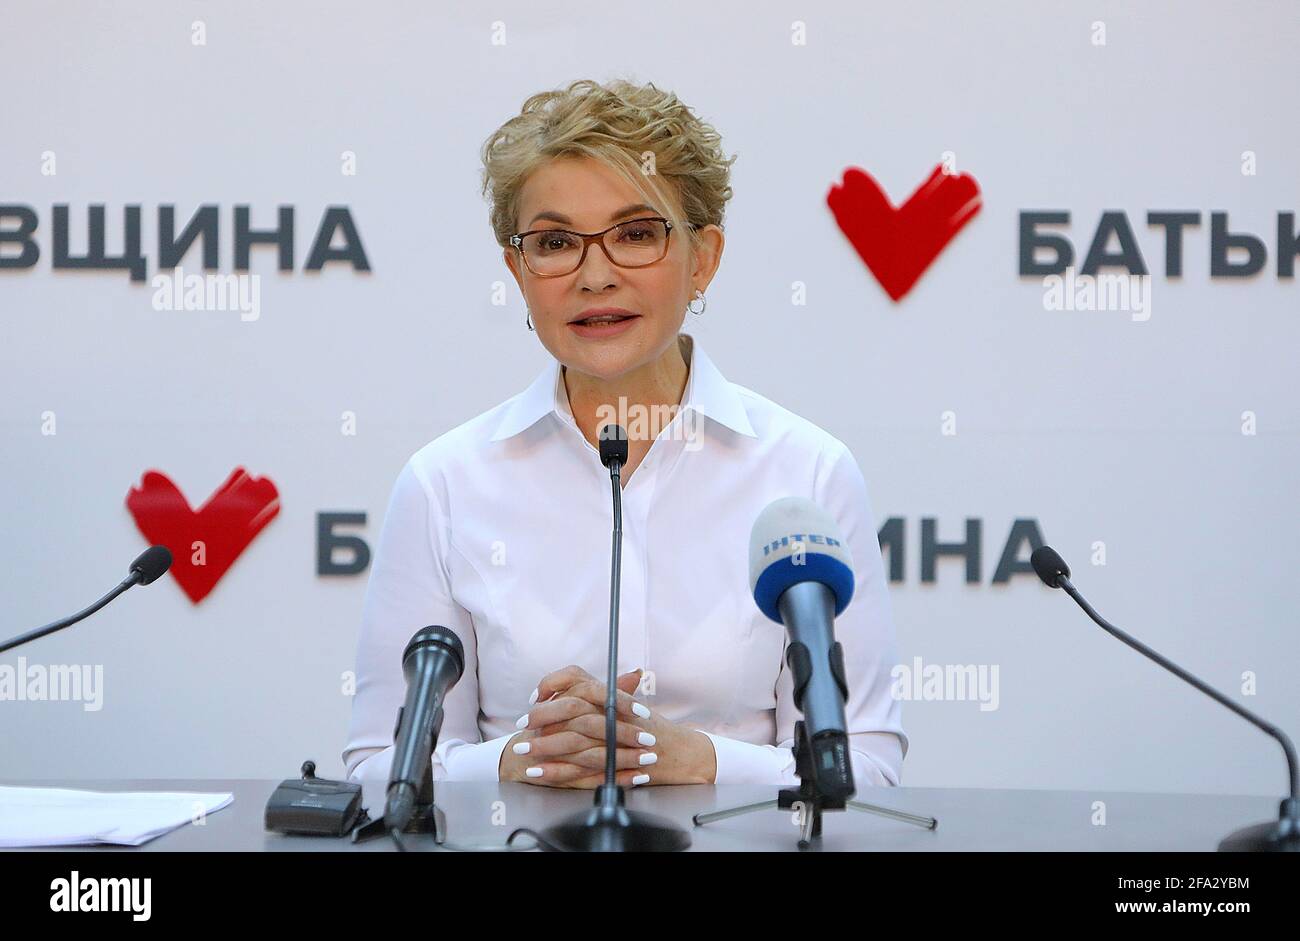 KYIV, UKRAINE - APRIL 22, 2021 - Batkivshchyna leader Yulia Tymoshenko holds a news conference, Kyiv, capital of Ukraine. Stock Photo